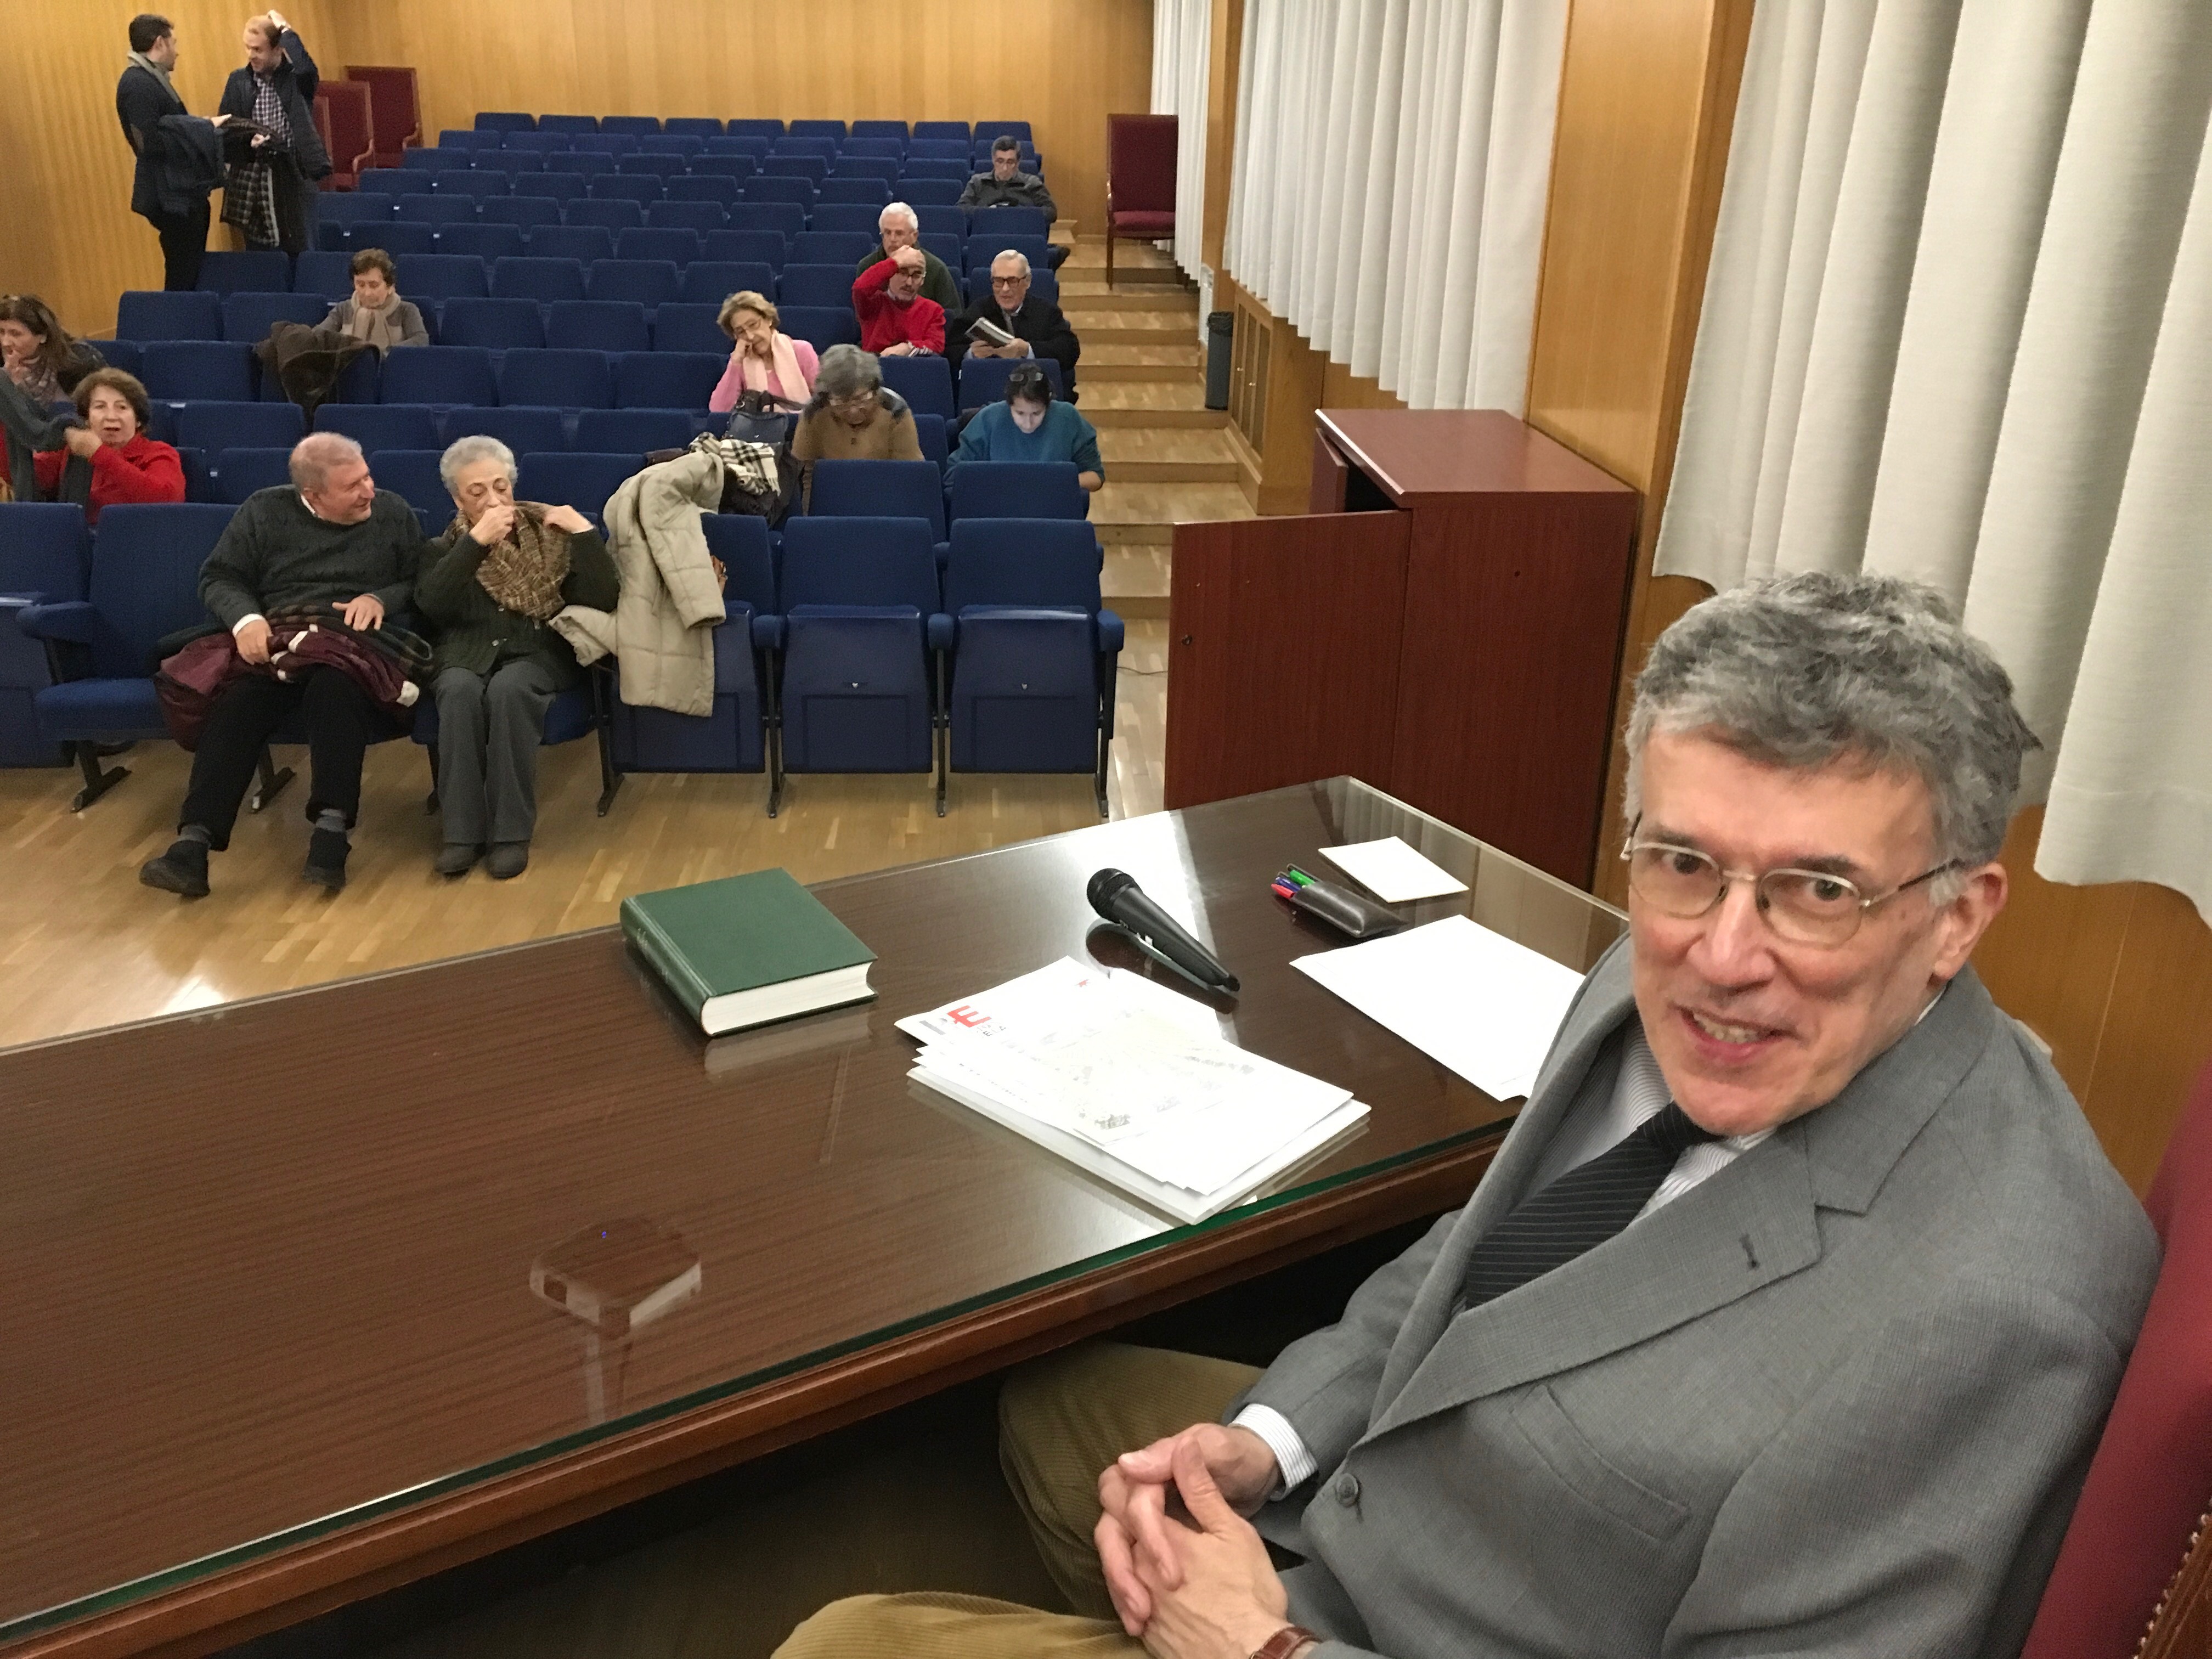 Imagen en la que se puede ver al profesor José María Margenat sentado, detrás de el se pueden ver los asistentes a la conferencia